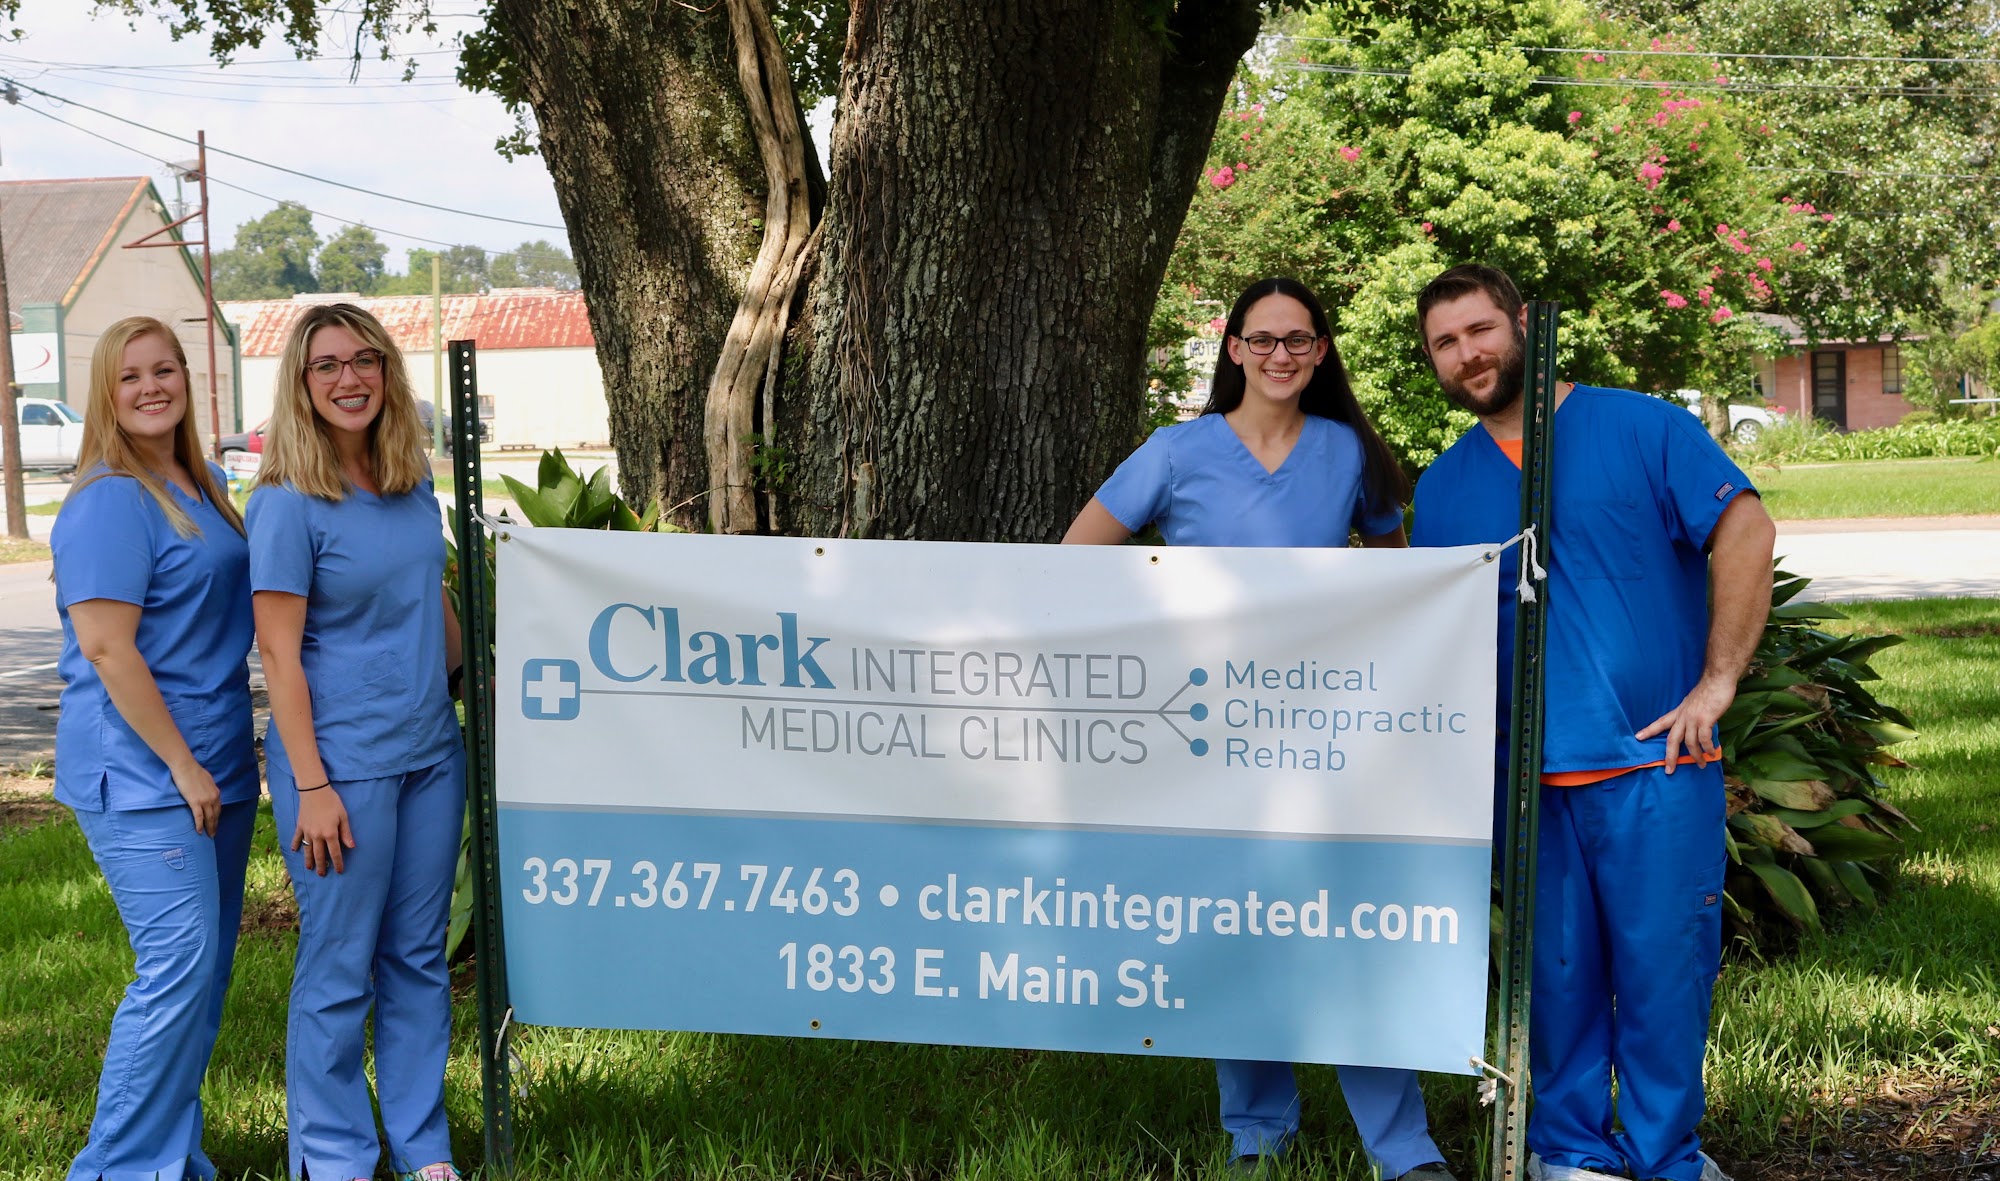 Clark Integrated Medical Clinics